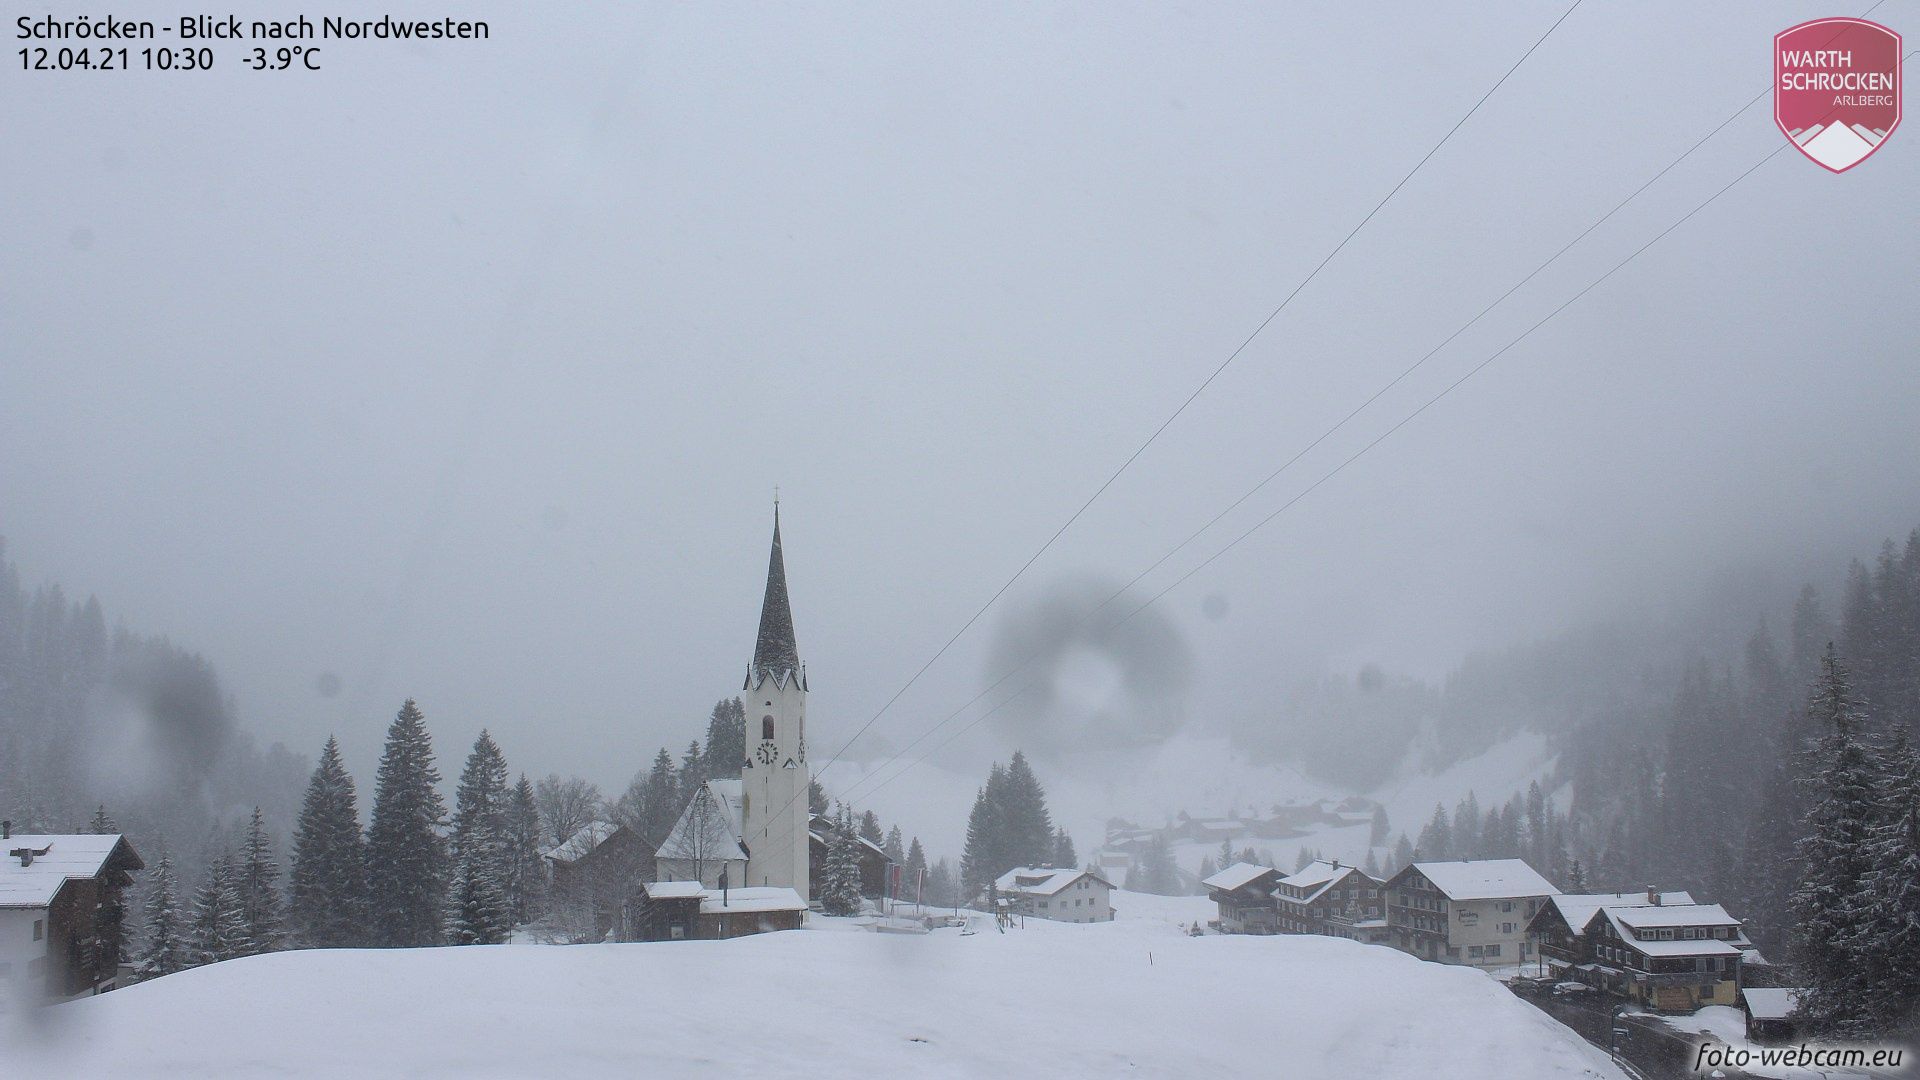 In Schröcken (Vorarlberg) it is already white again (foto-webcam.eu)